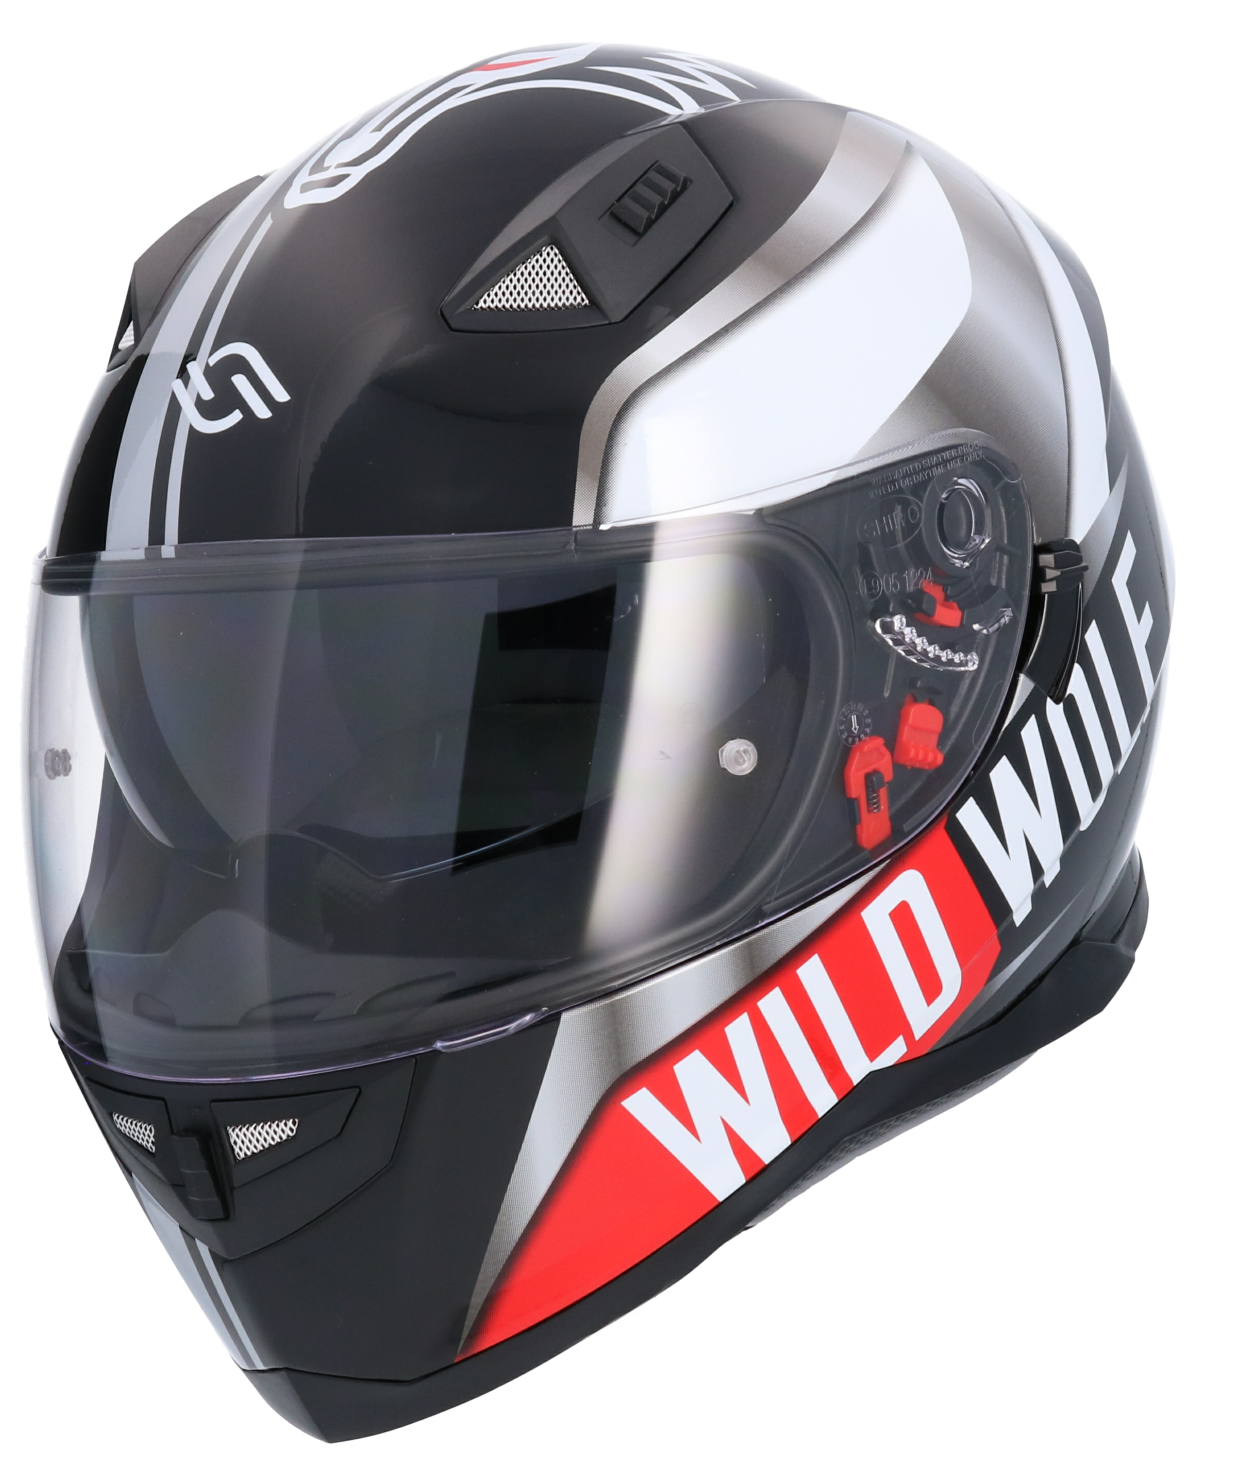 Casco De Moto Integral Ece Homologado Wildwolf Sh881 Edicion